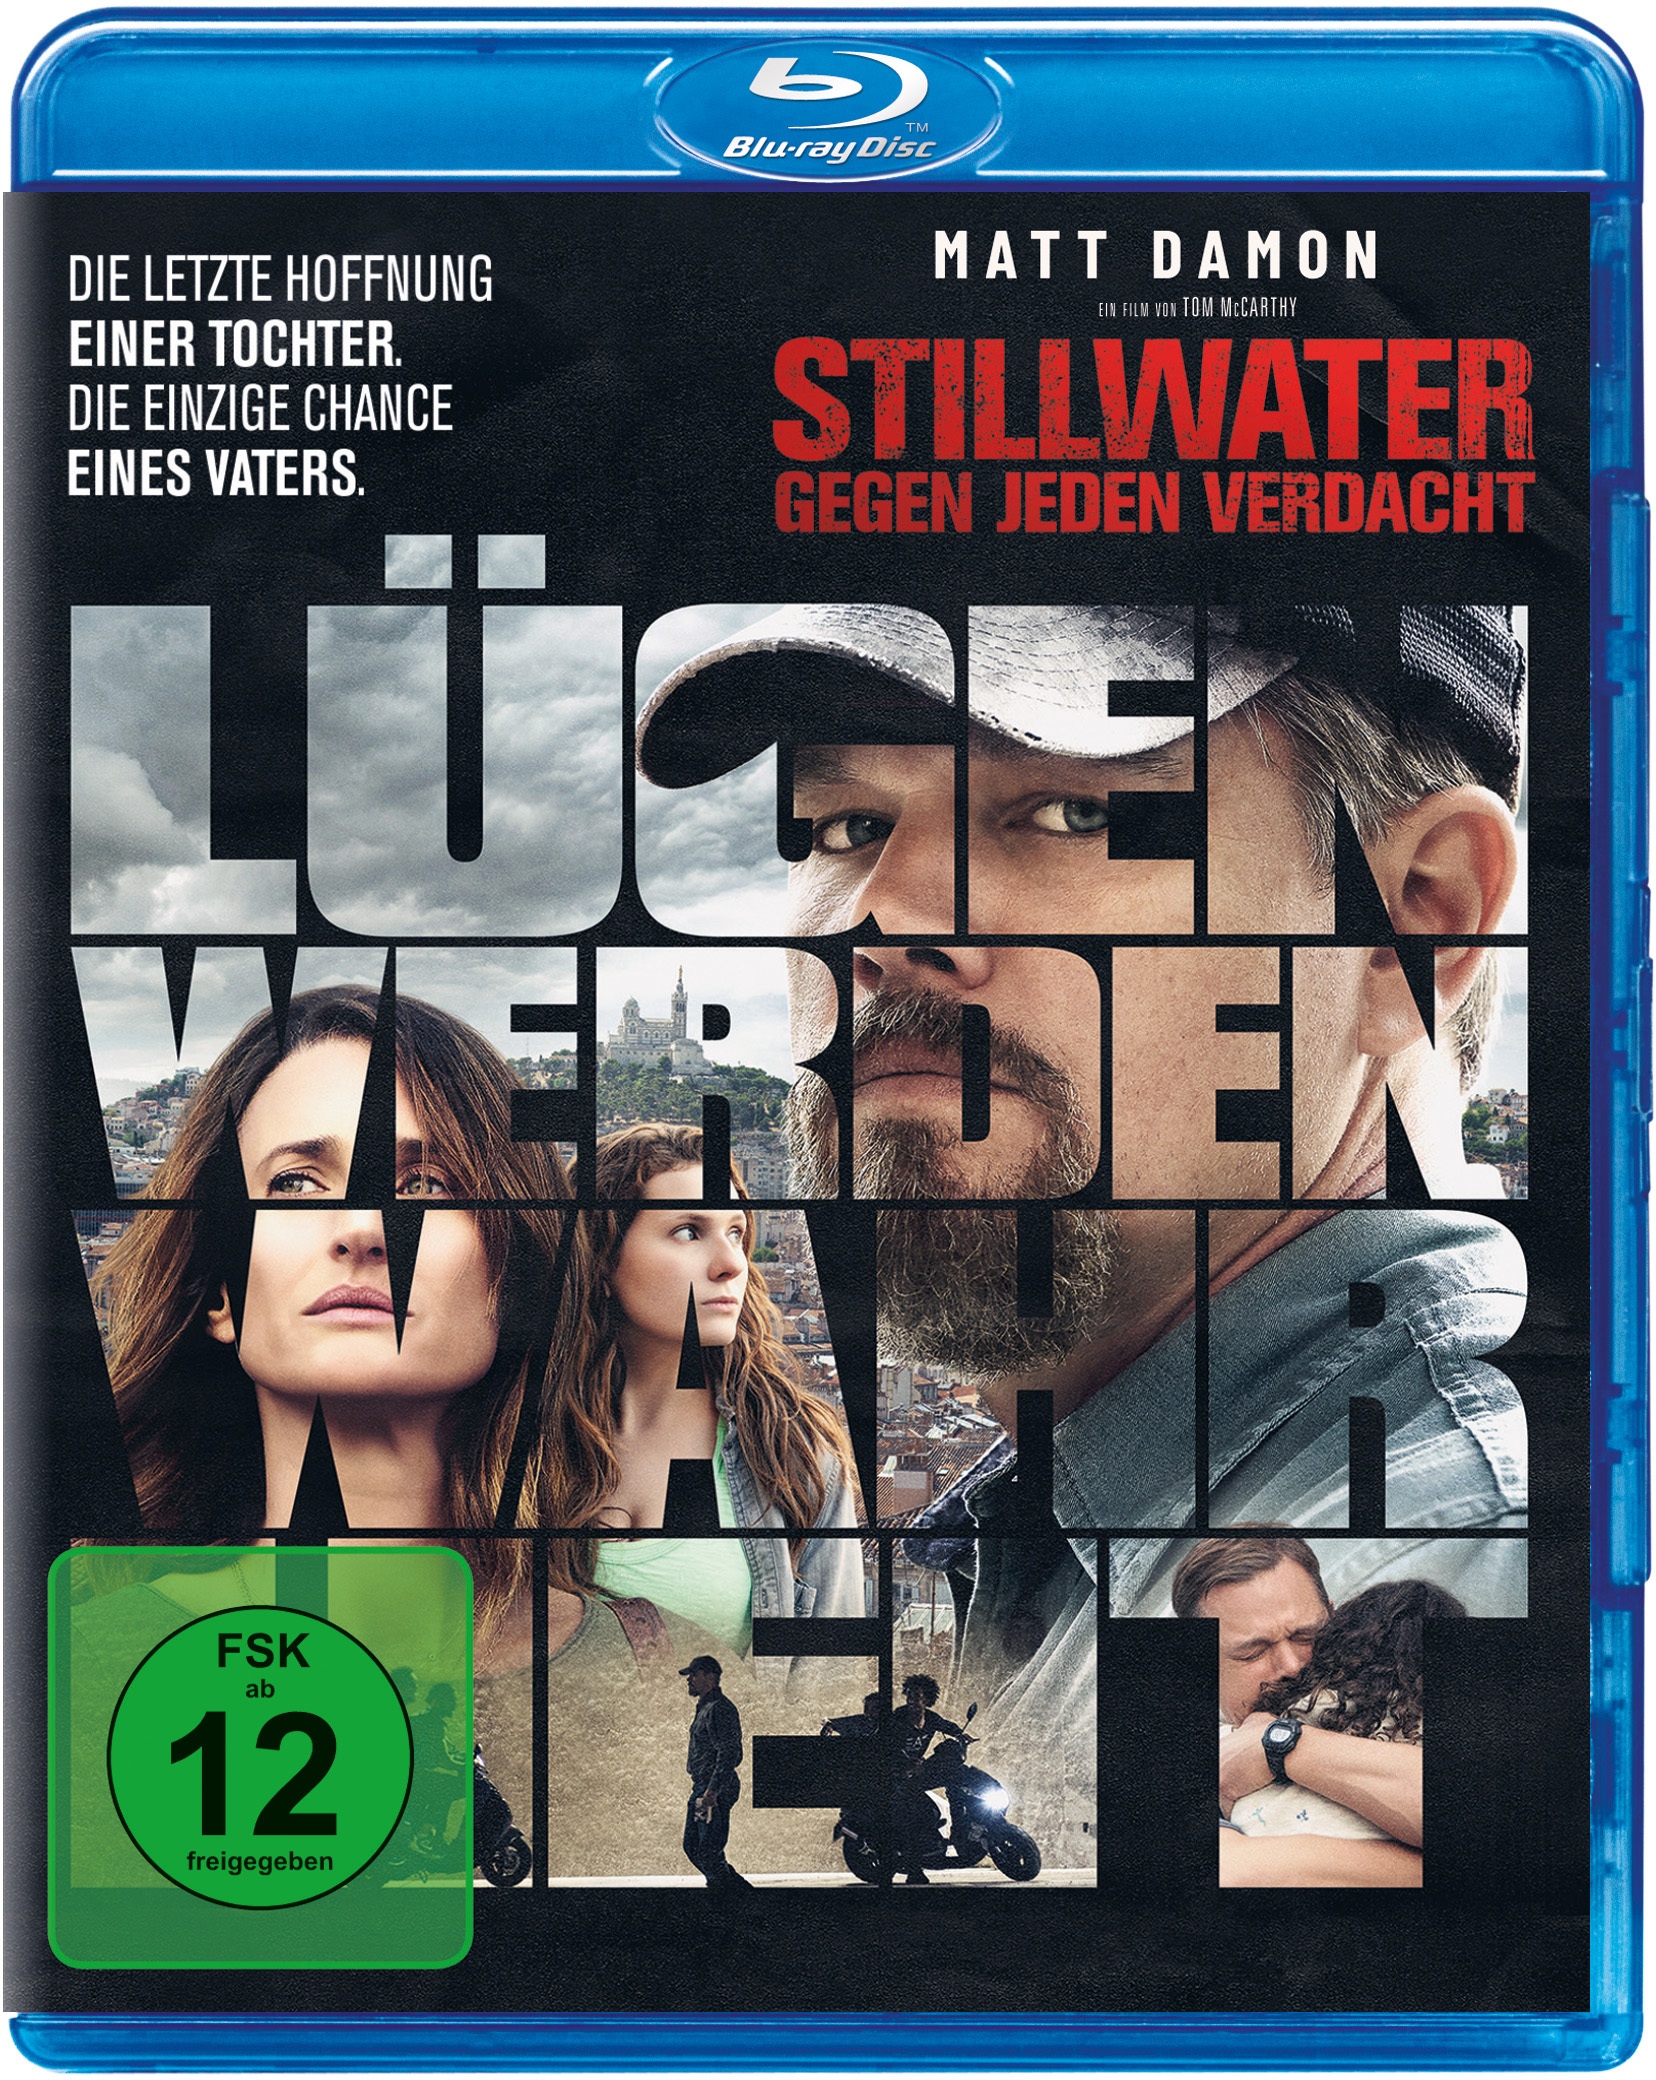 Stillwater - Gegen Jeden Verdacht (Blu-ray)